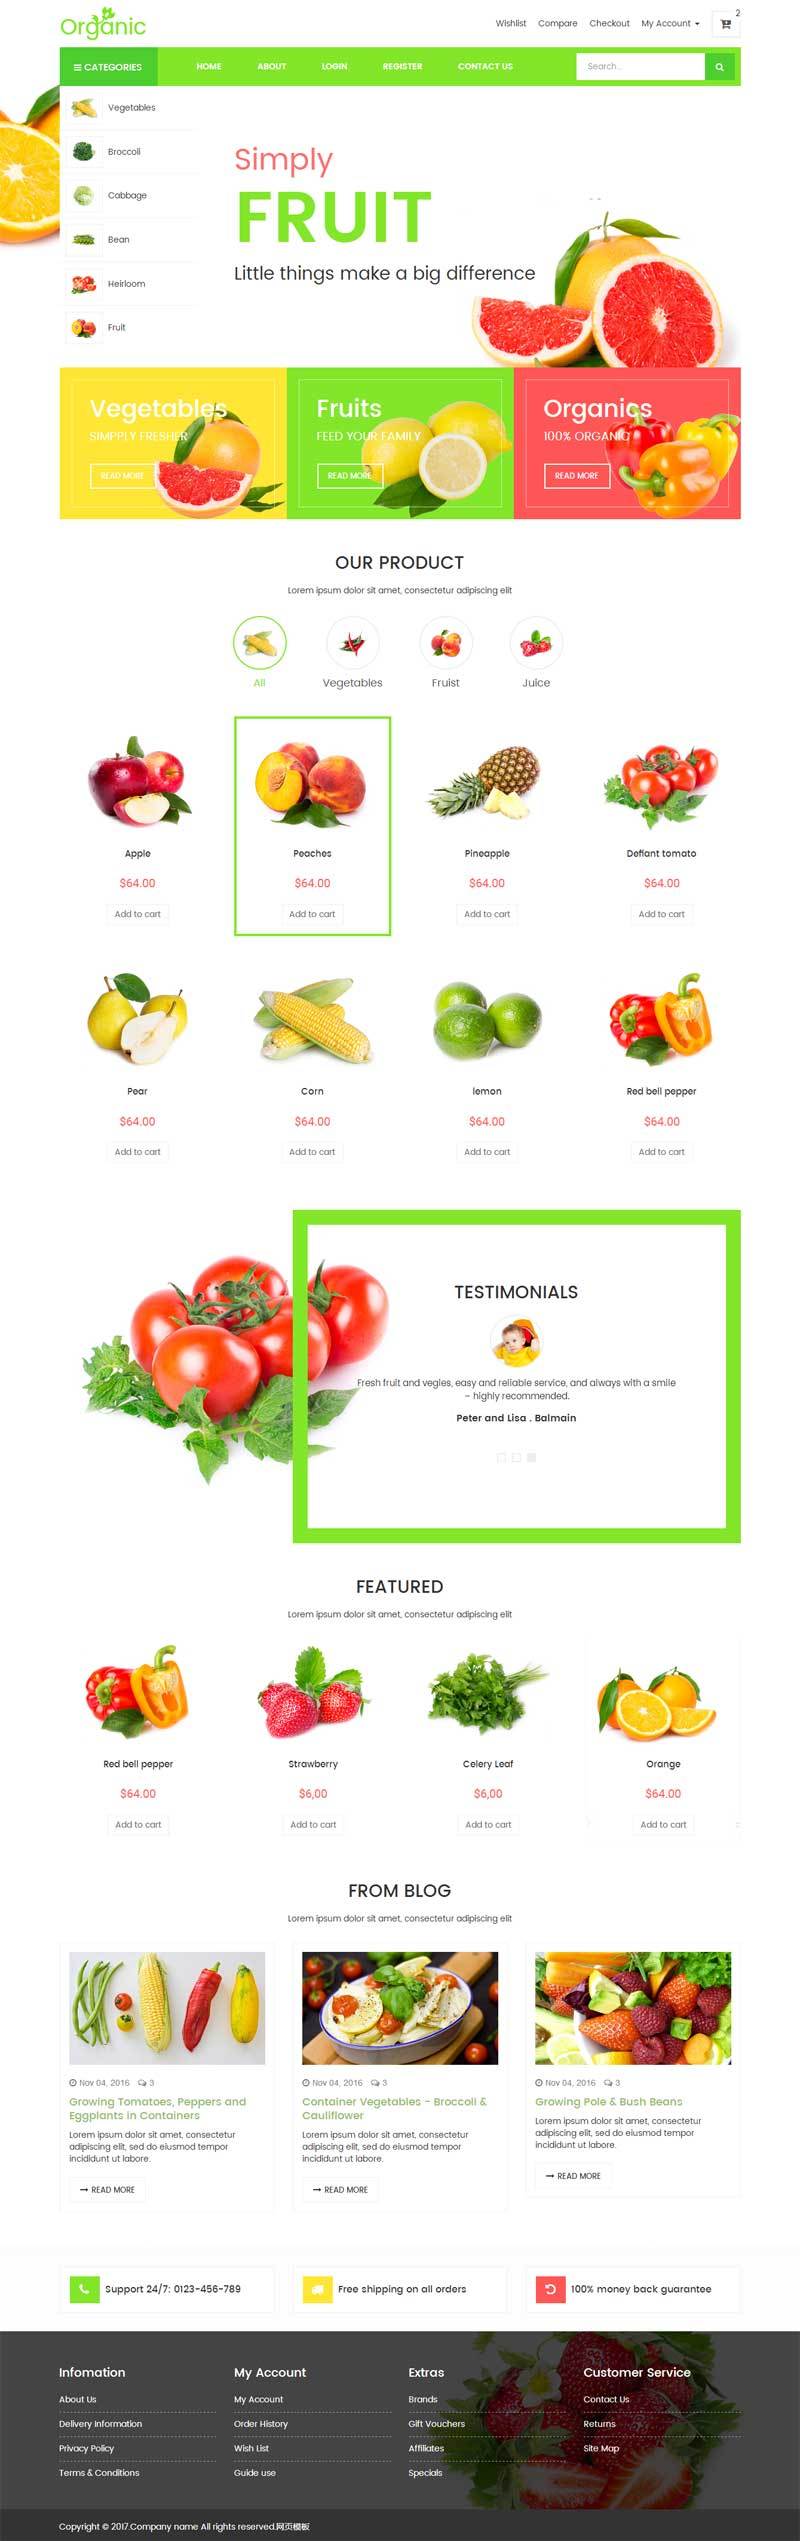 蔬菜水果网上购物商城绿色简洁的模板源码